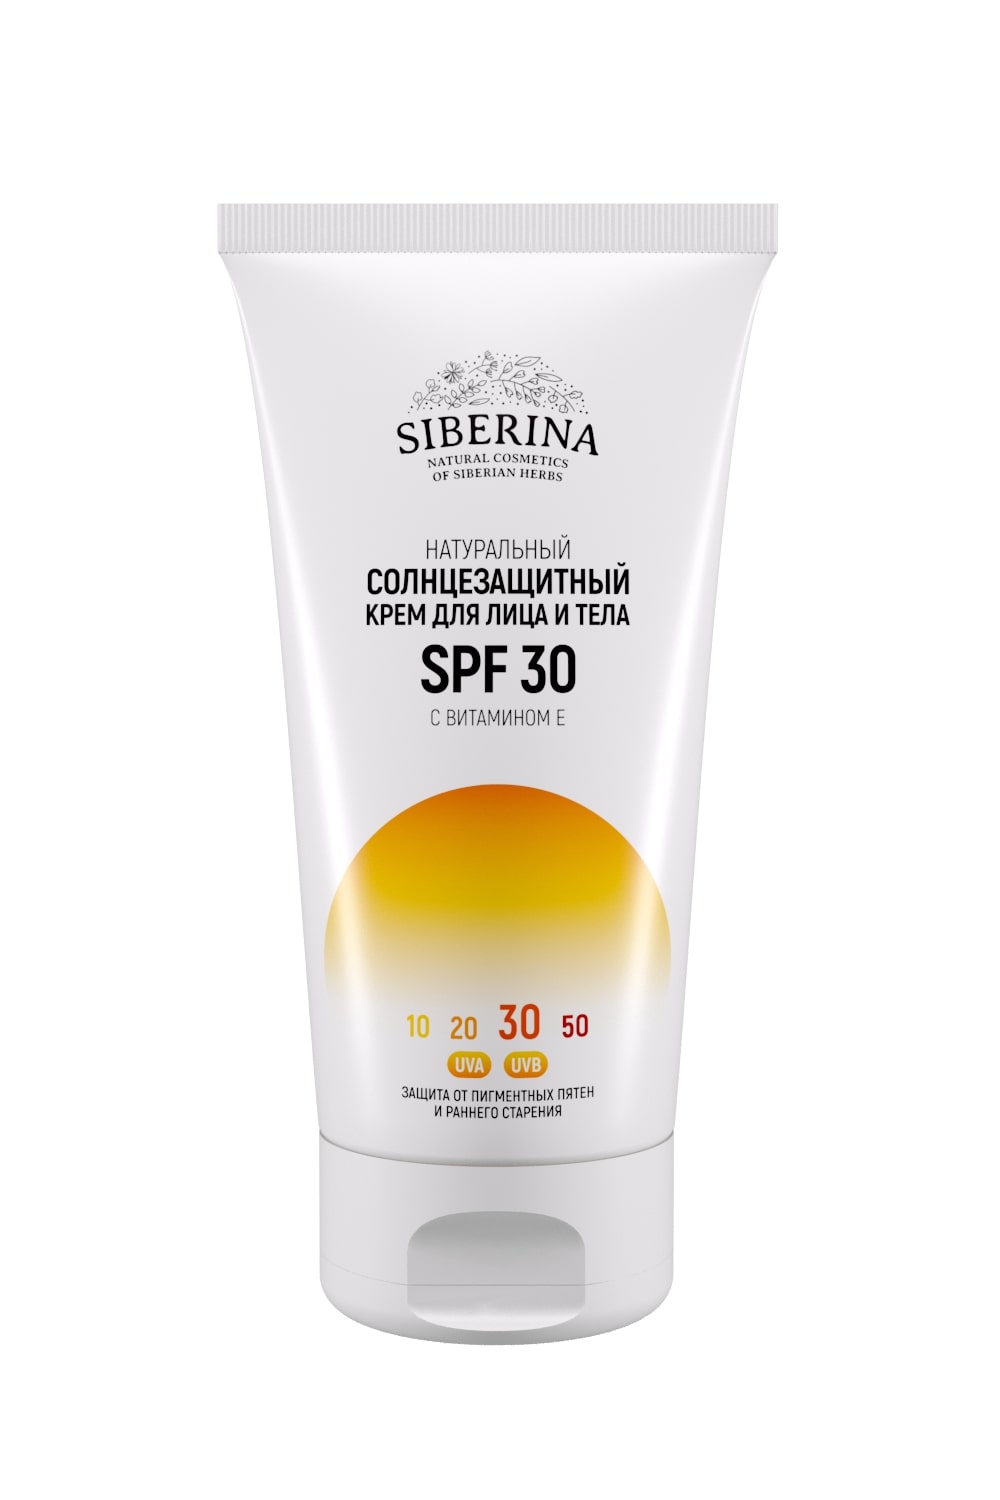 Солнцезащитный крем для лица и тела spf 30 с витамином е SOZ(1)-SIB -  купить в интернет-магазине Siberina.ru в Москве